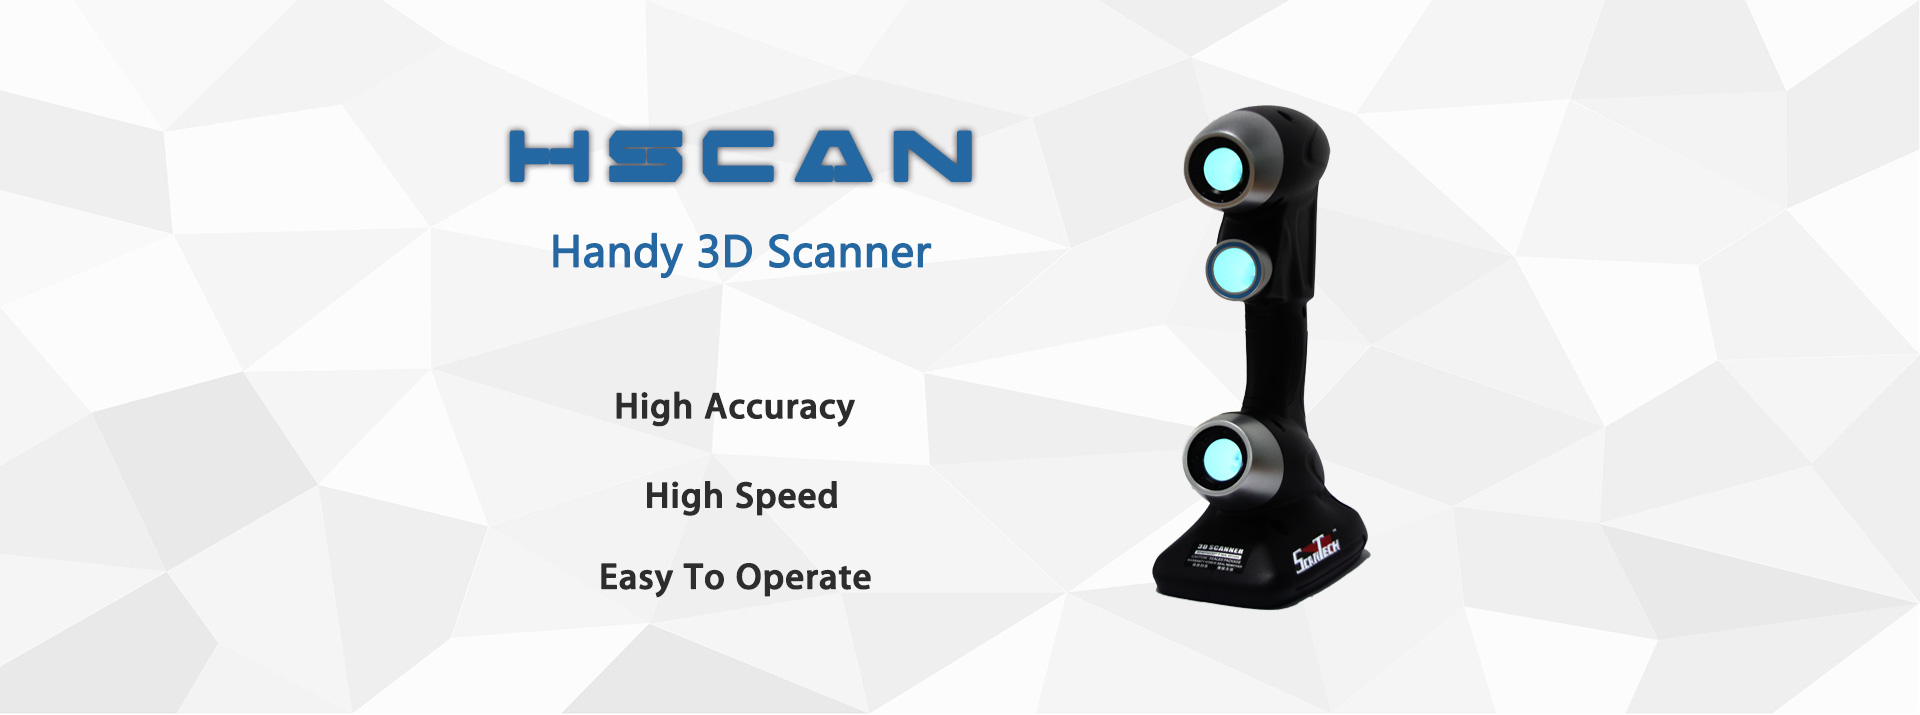 Handheld white light 3D scanner| Ireal 3D scanner